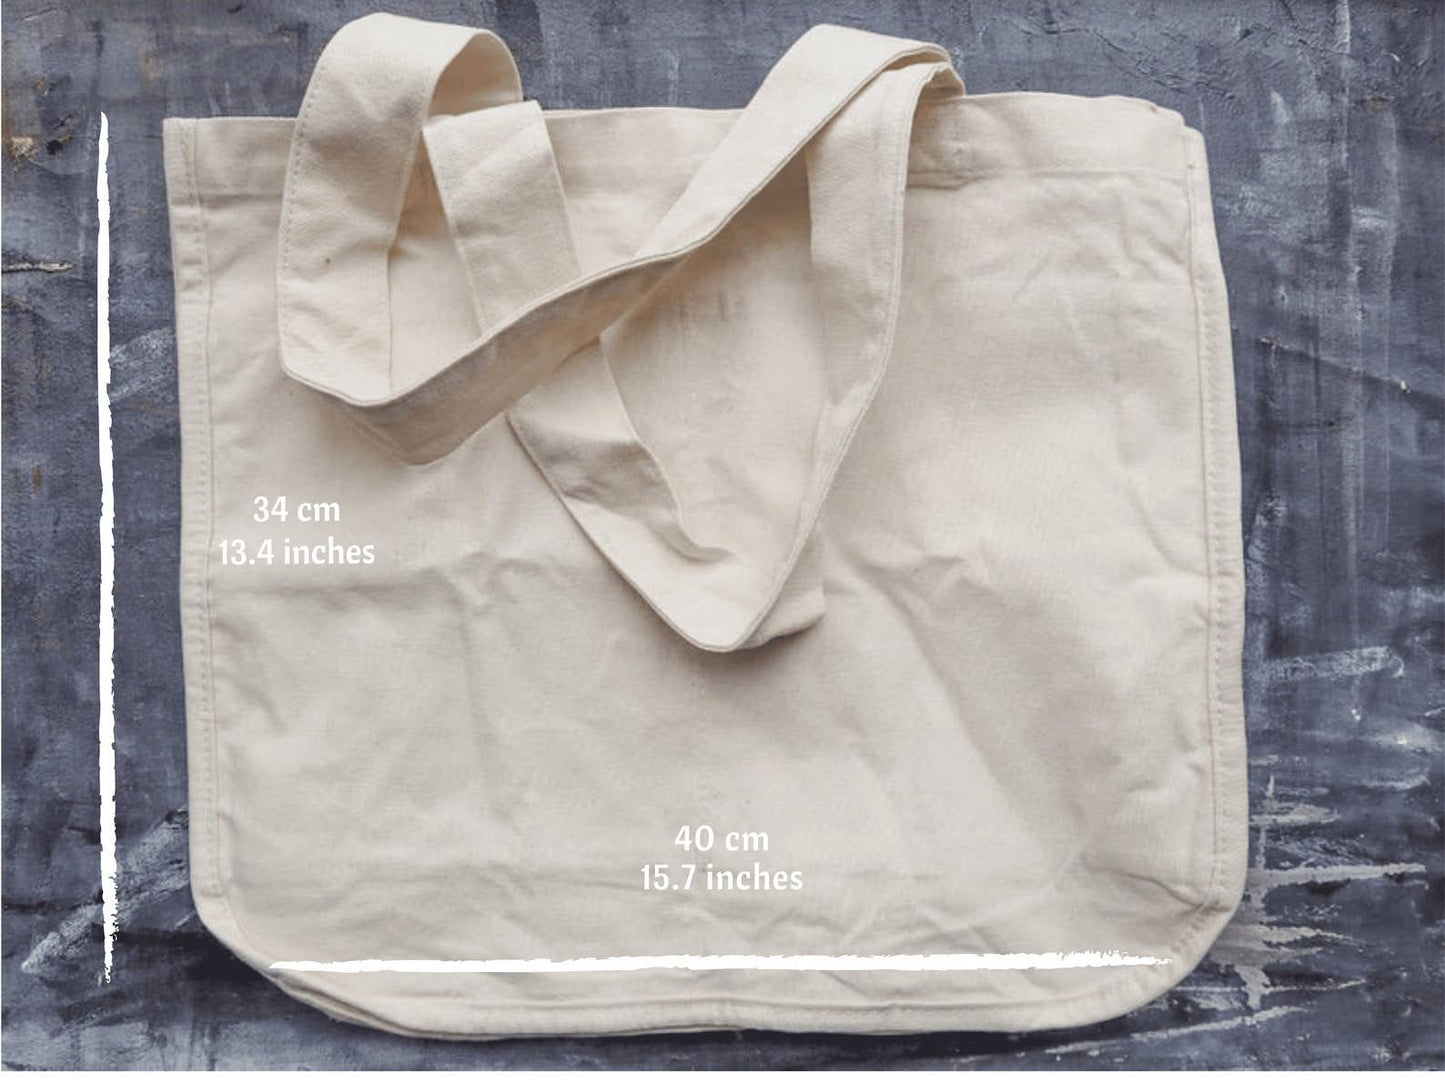 Multi-pocket Tote Bag